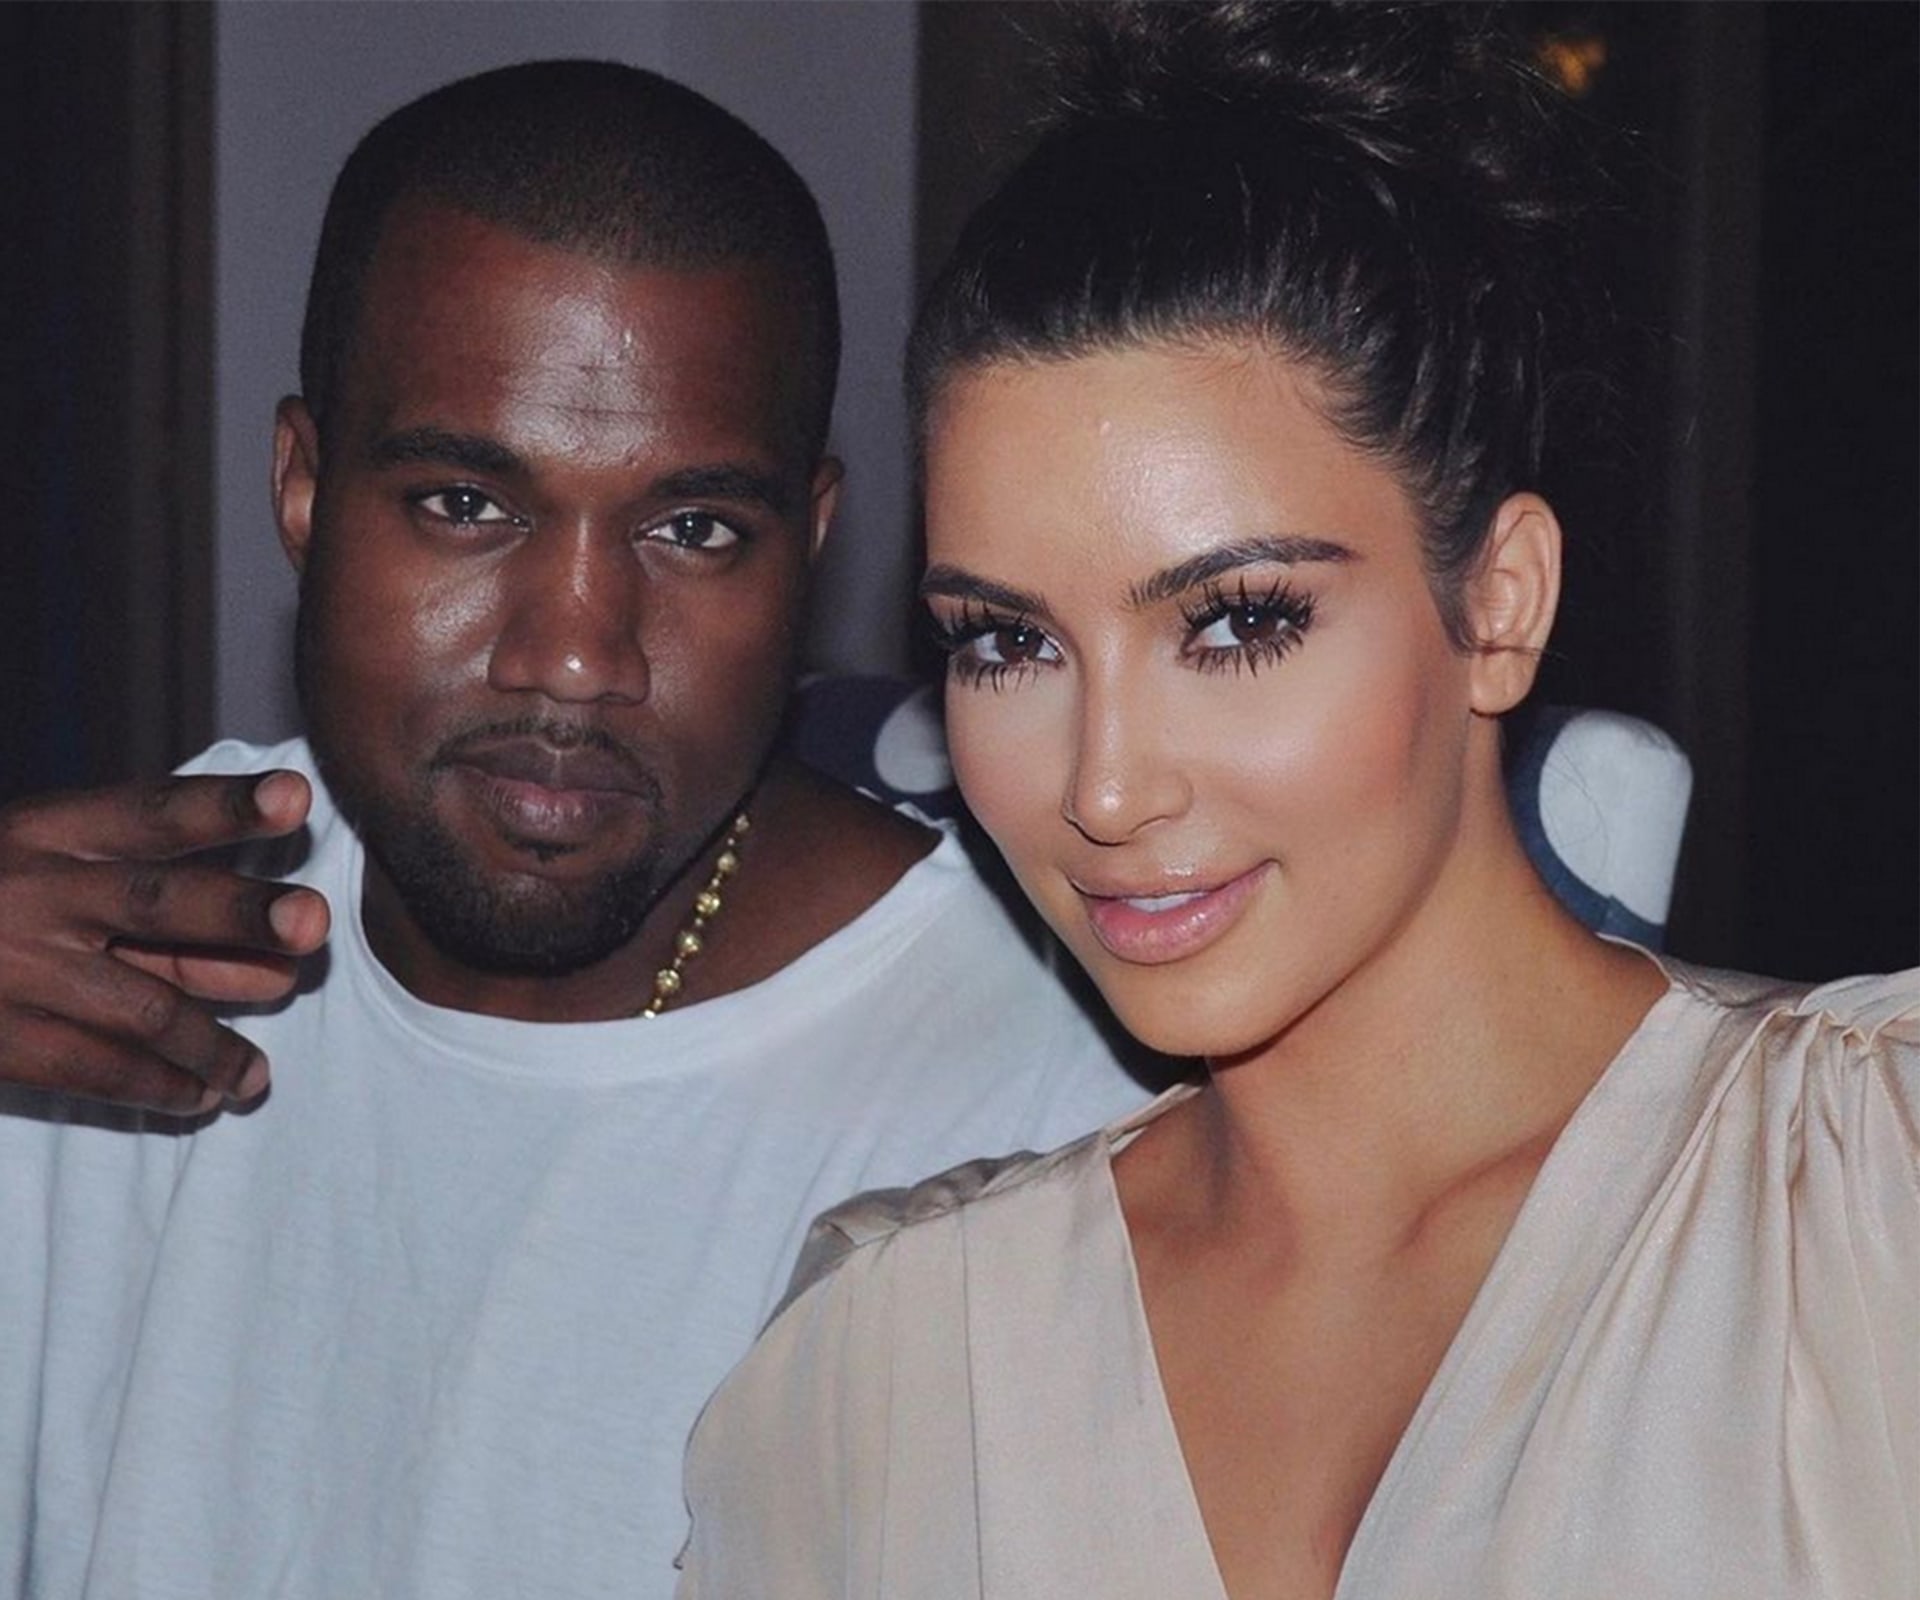 V květnu 2014 Kanye West pojal za choť profesionální celebritu a podnikatelku Kim Kardashian, se kterou má dva potomky Northa a Sainta.